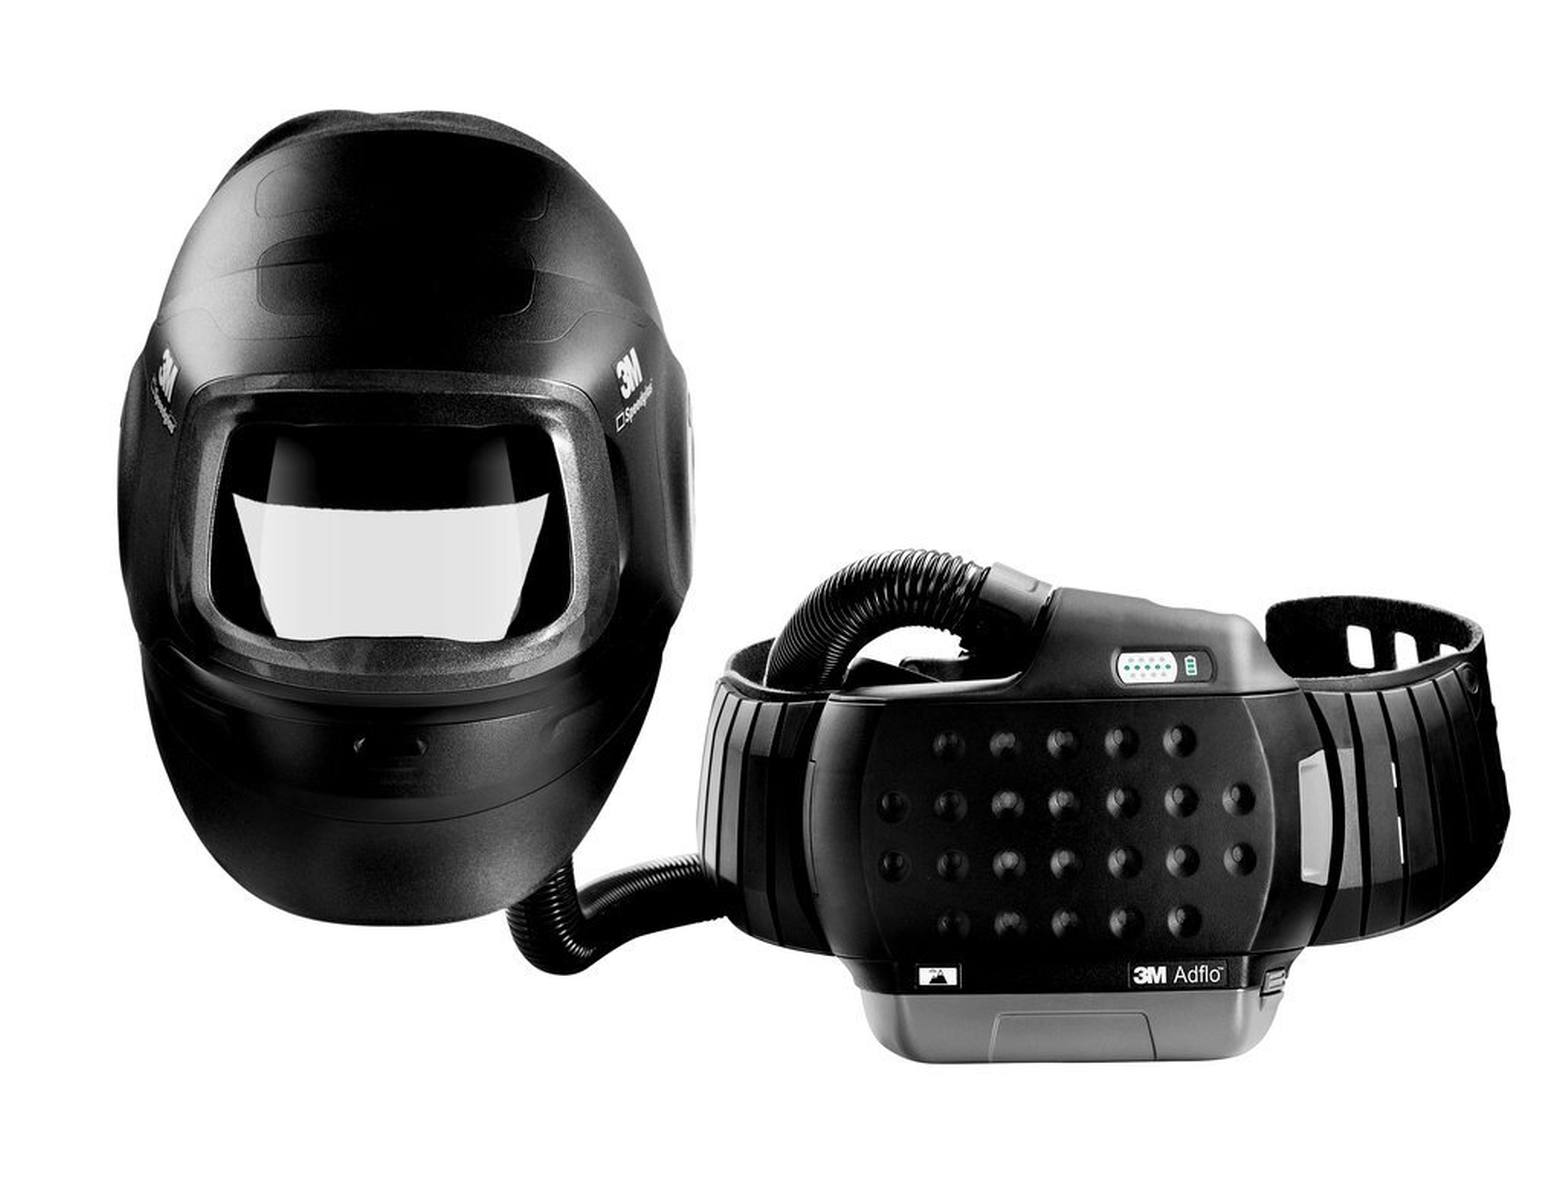 Masque de soudage haute performance 3M Speedglas G5-01 avec protection respiratoire à ventilation assistée 3M Adflo, batterie haute performance, kit de démarrage des consommables et sac de rangement, sans filtre de soudage, H617809